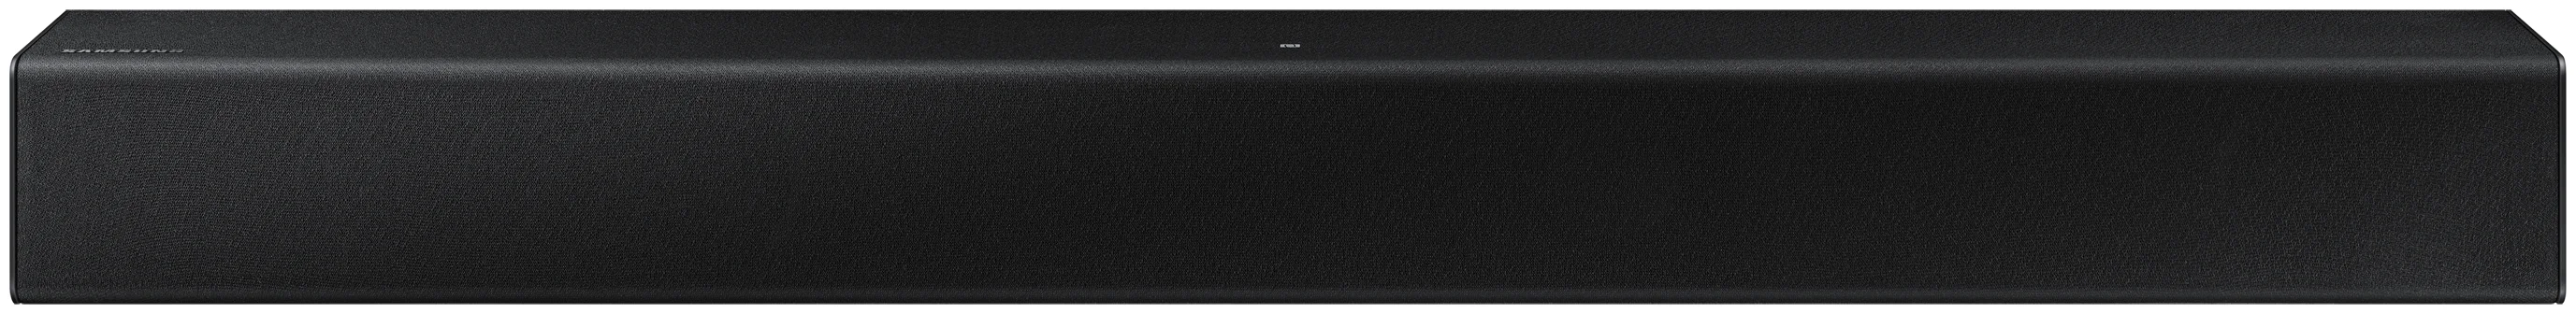 Samsung HW-T400 - вид АС: звуковая панель